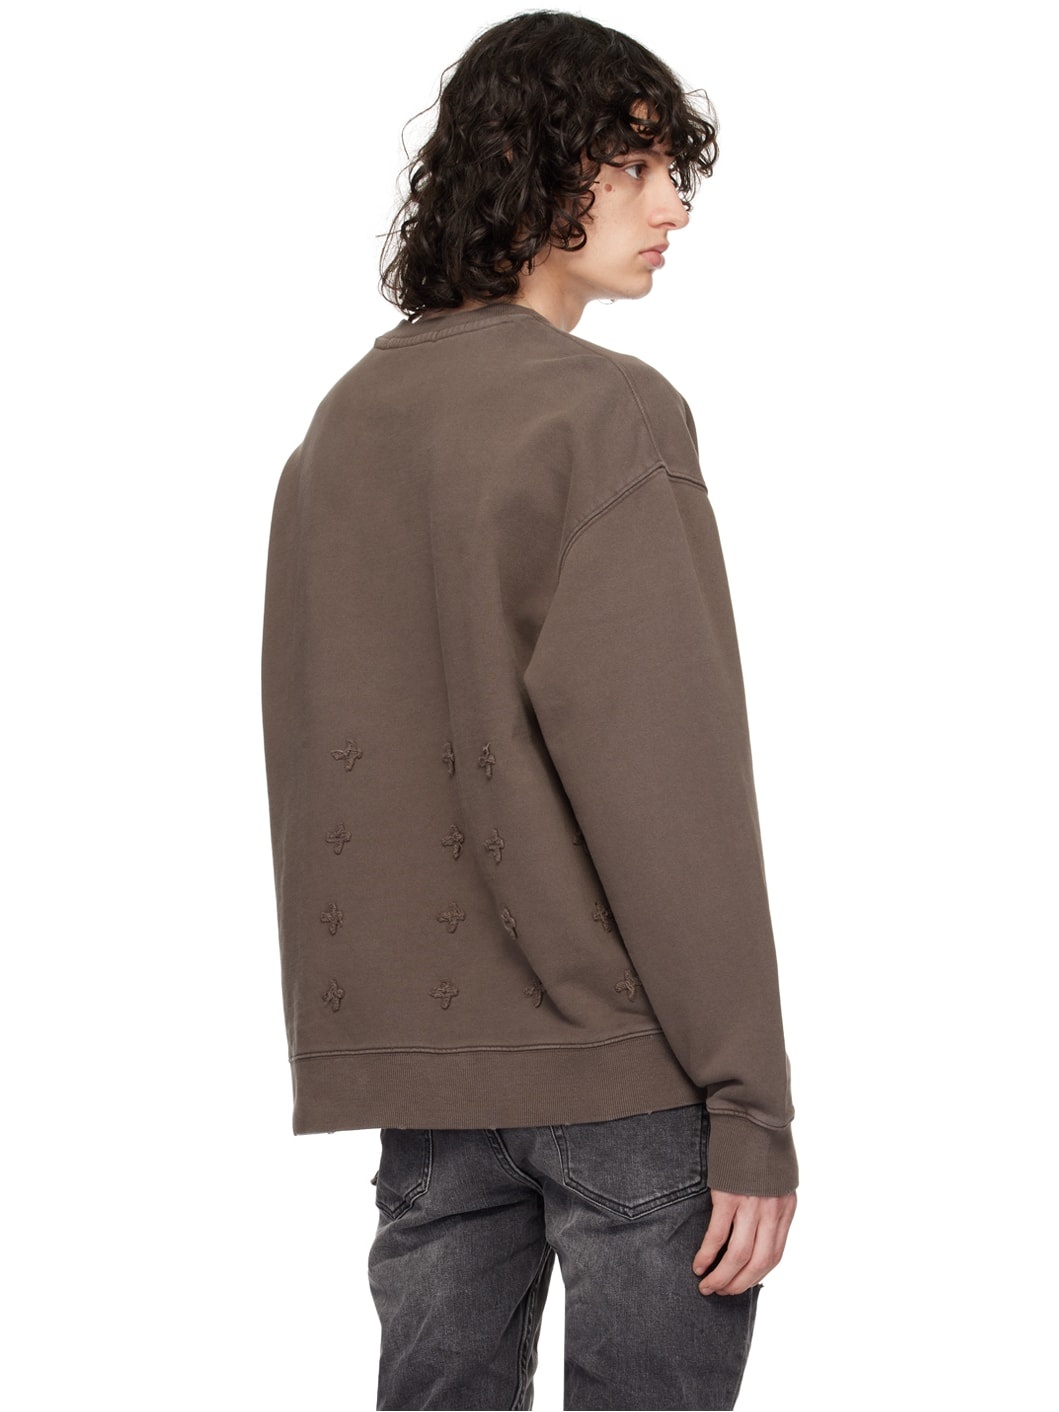 Brown Biggie Sweatshirt - 3